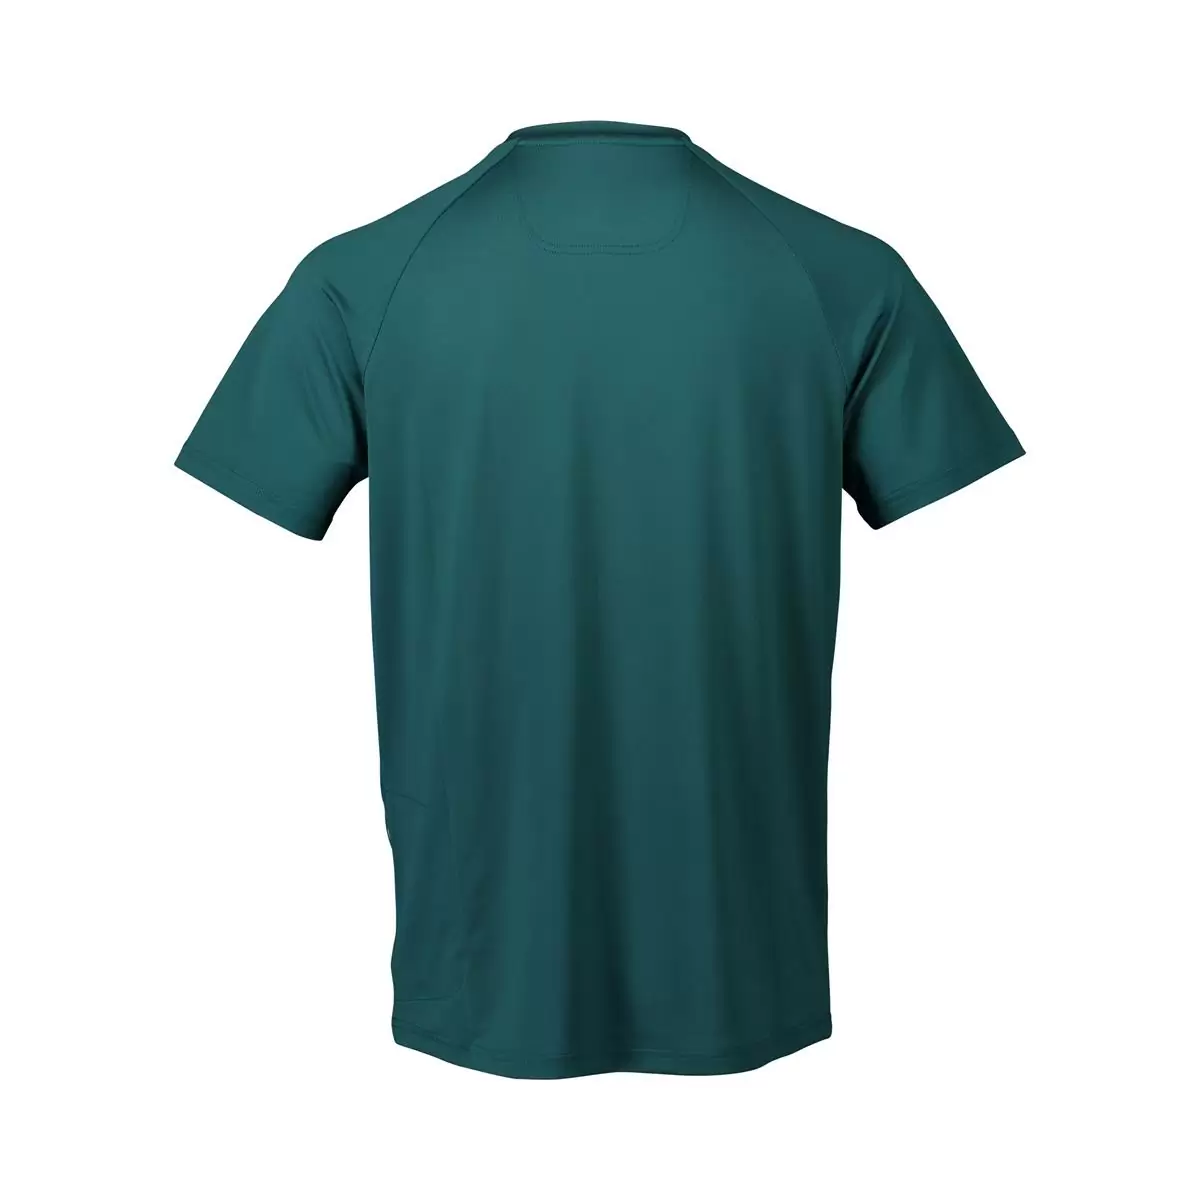 T-shirt Reform Enduro Dioptase Bleu taille S #1